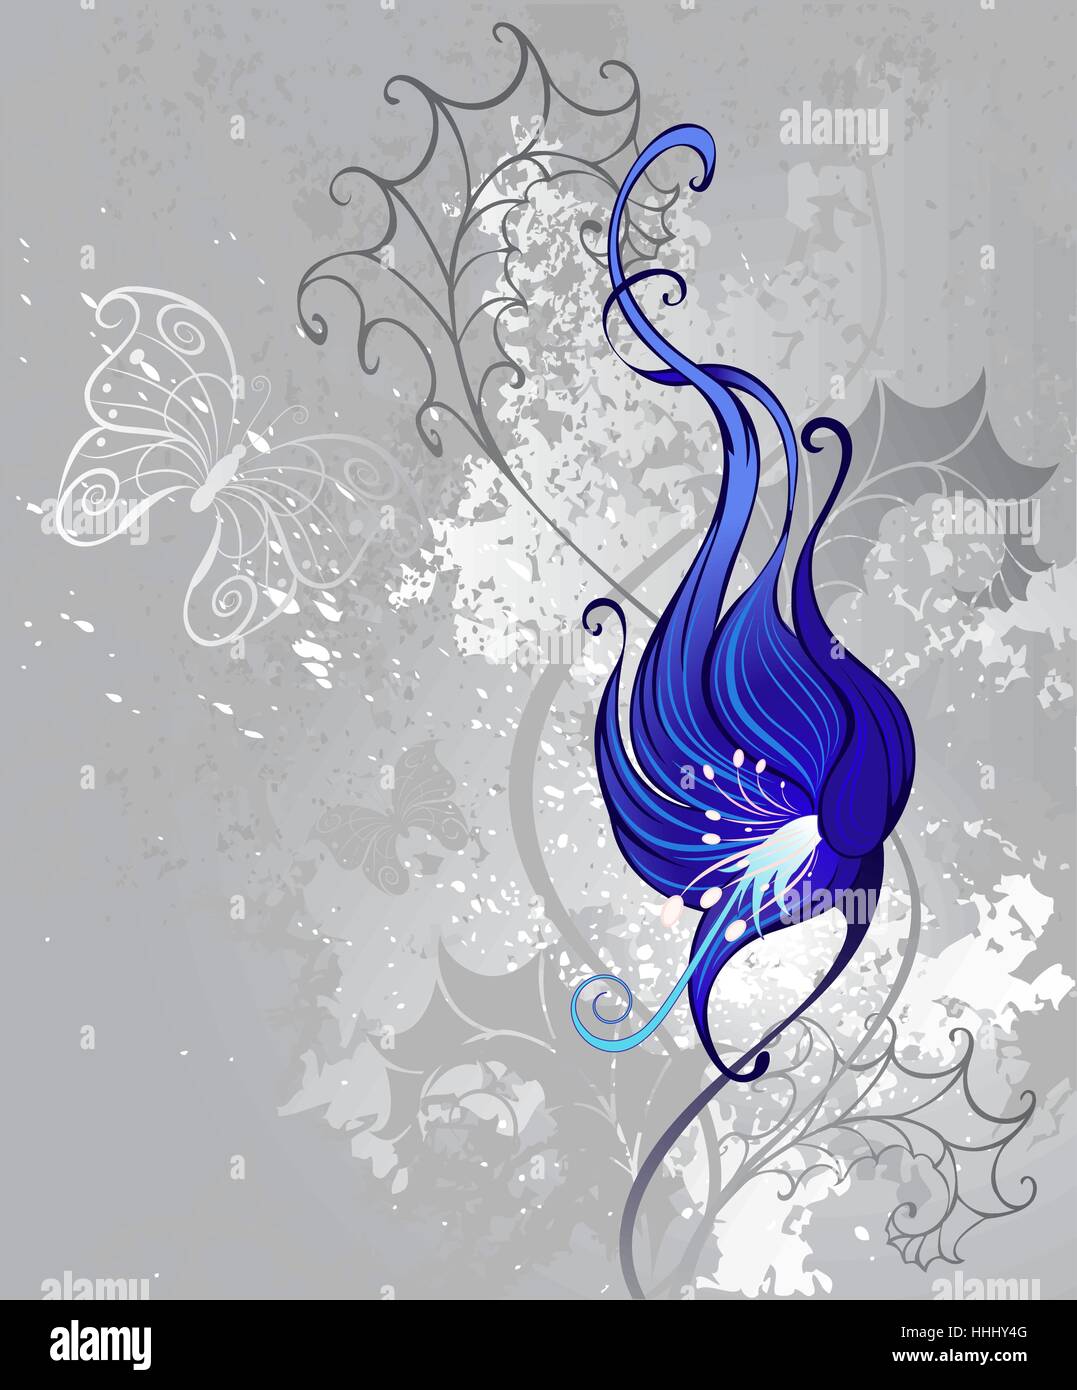 künstlerisch gezeichnet, seltsame blaue Blume auf einem grauen strukturierten Hintergrund. Stock Vektor